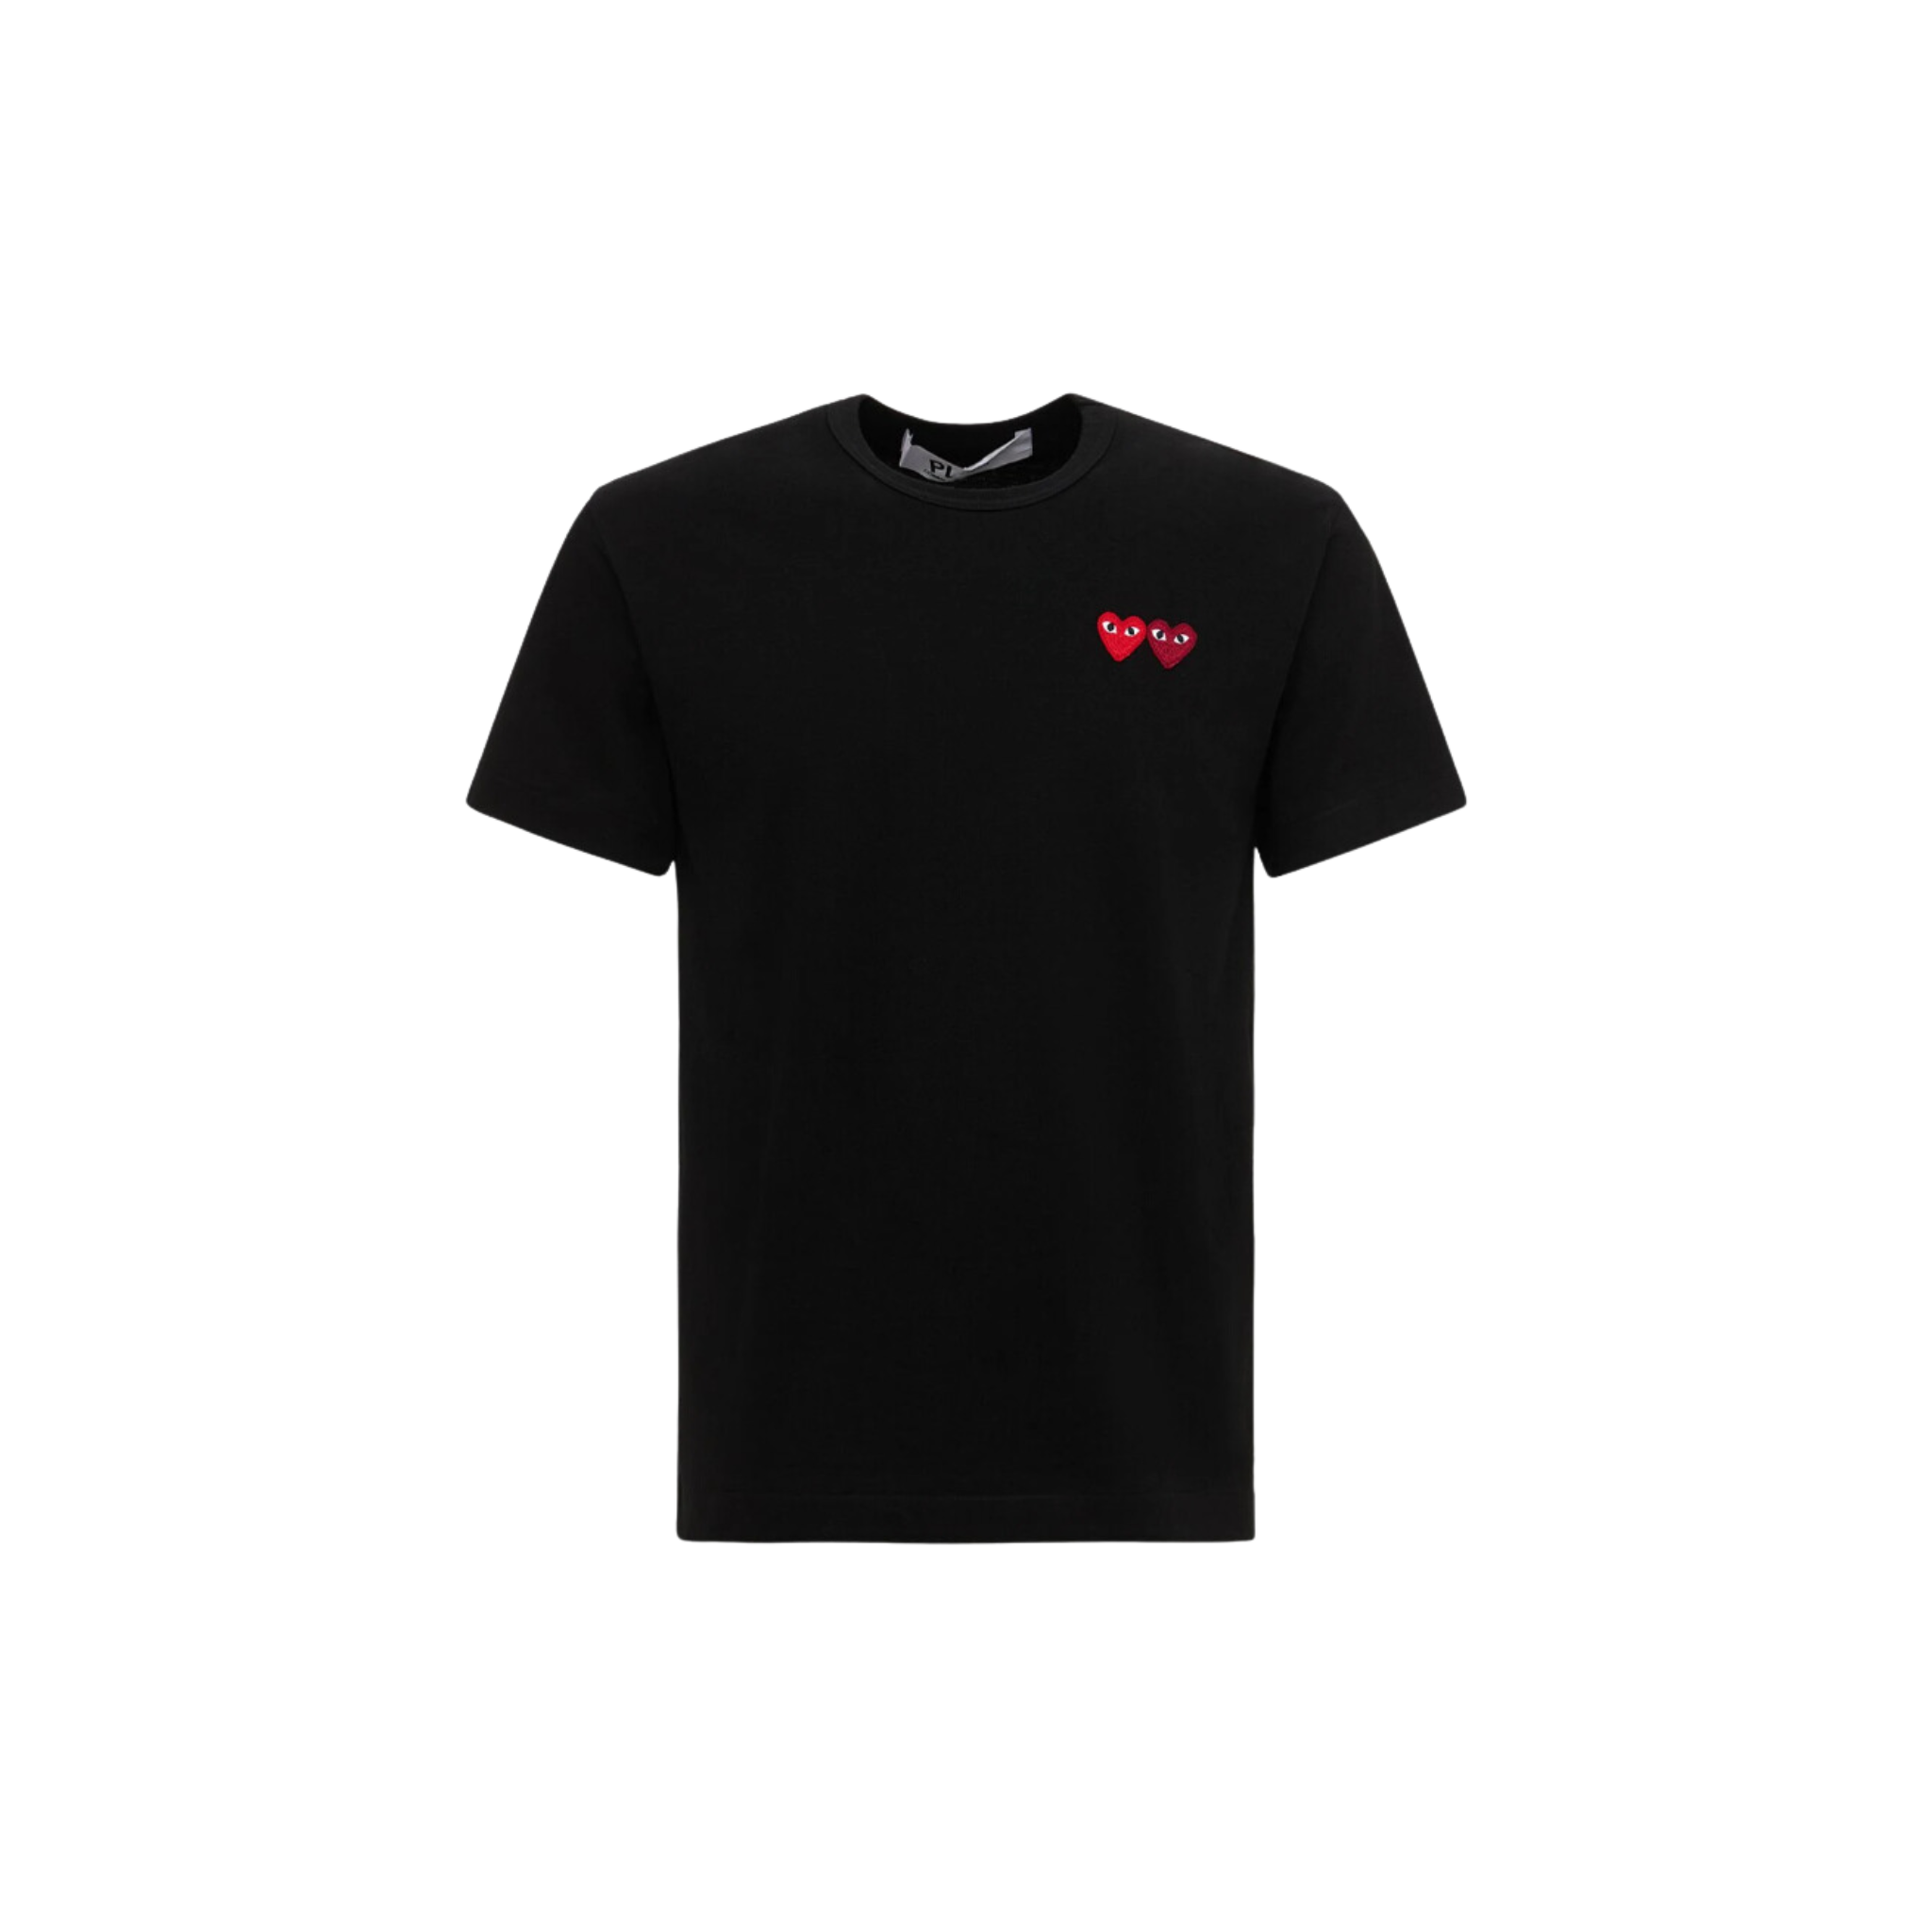 Comme des Garçons Play Double Heart Patch Cotton Jersey Black T-shirt